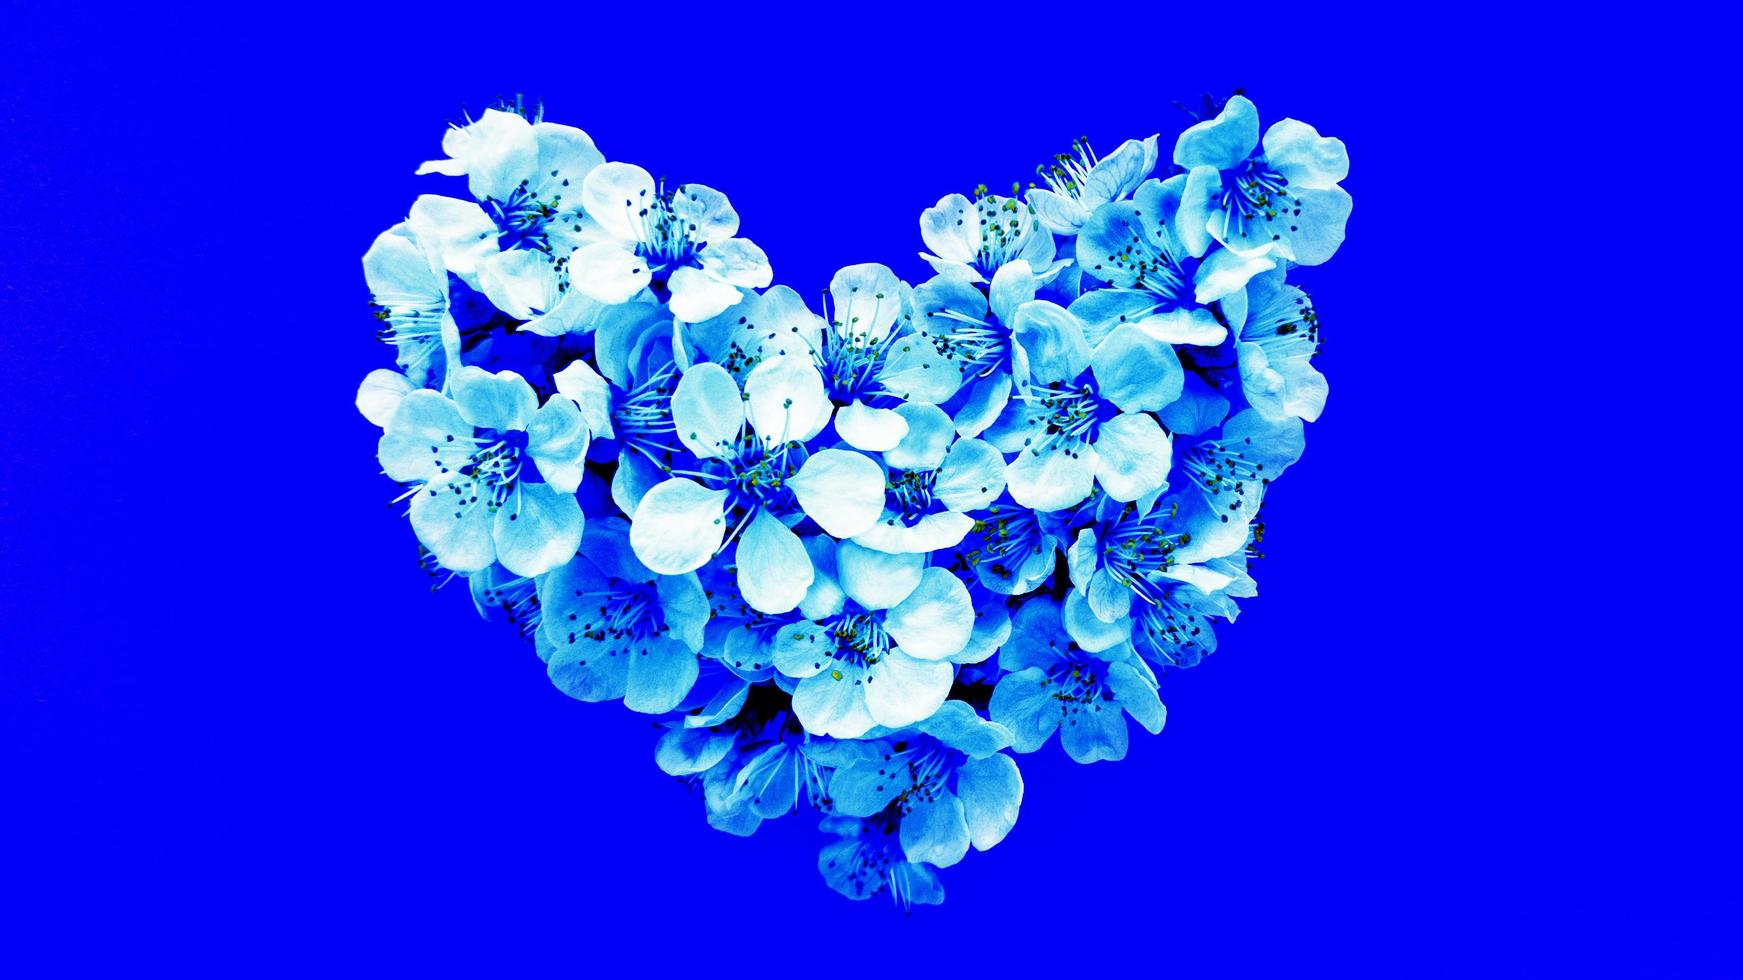 flores em forma de coração sobre fundo azul. fotografia de arquivo. foto